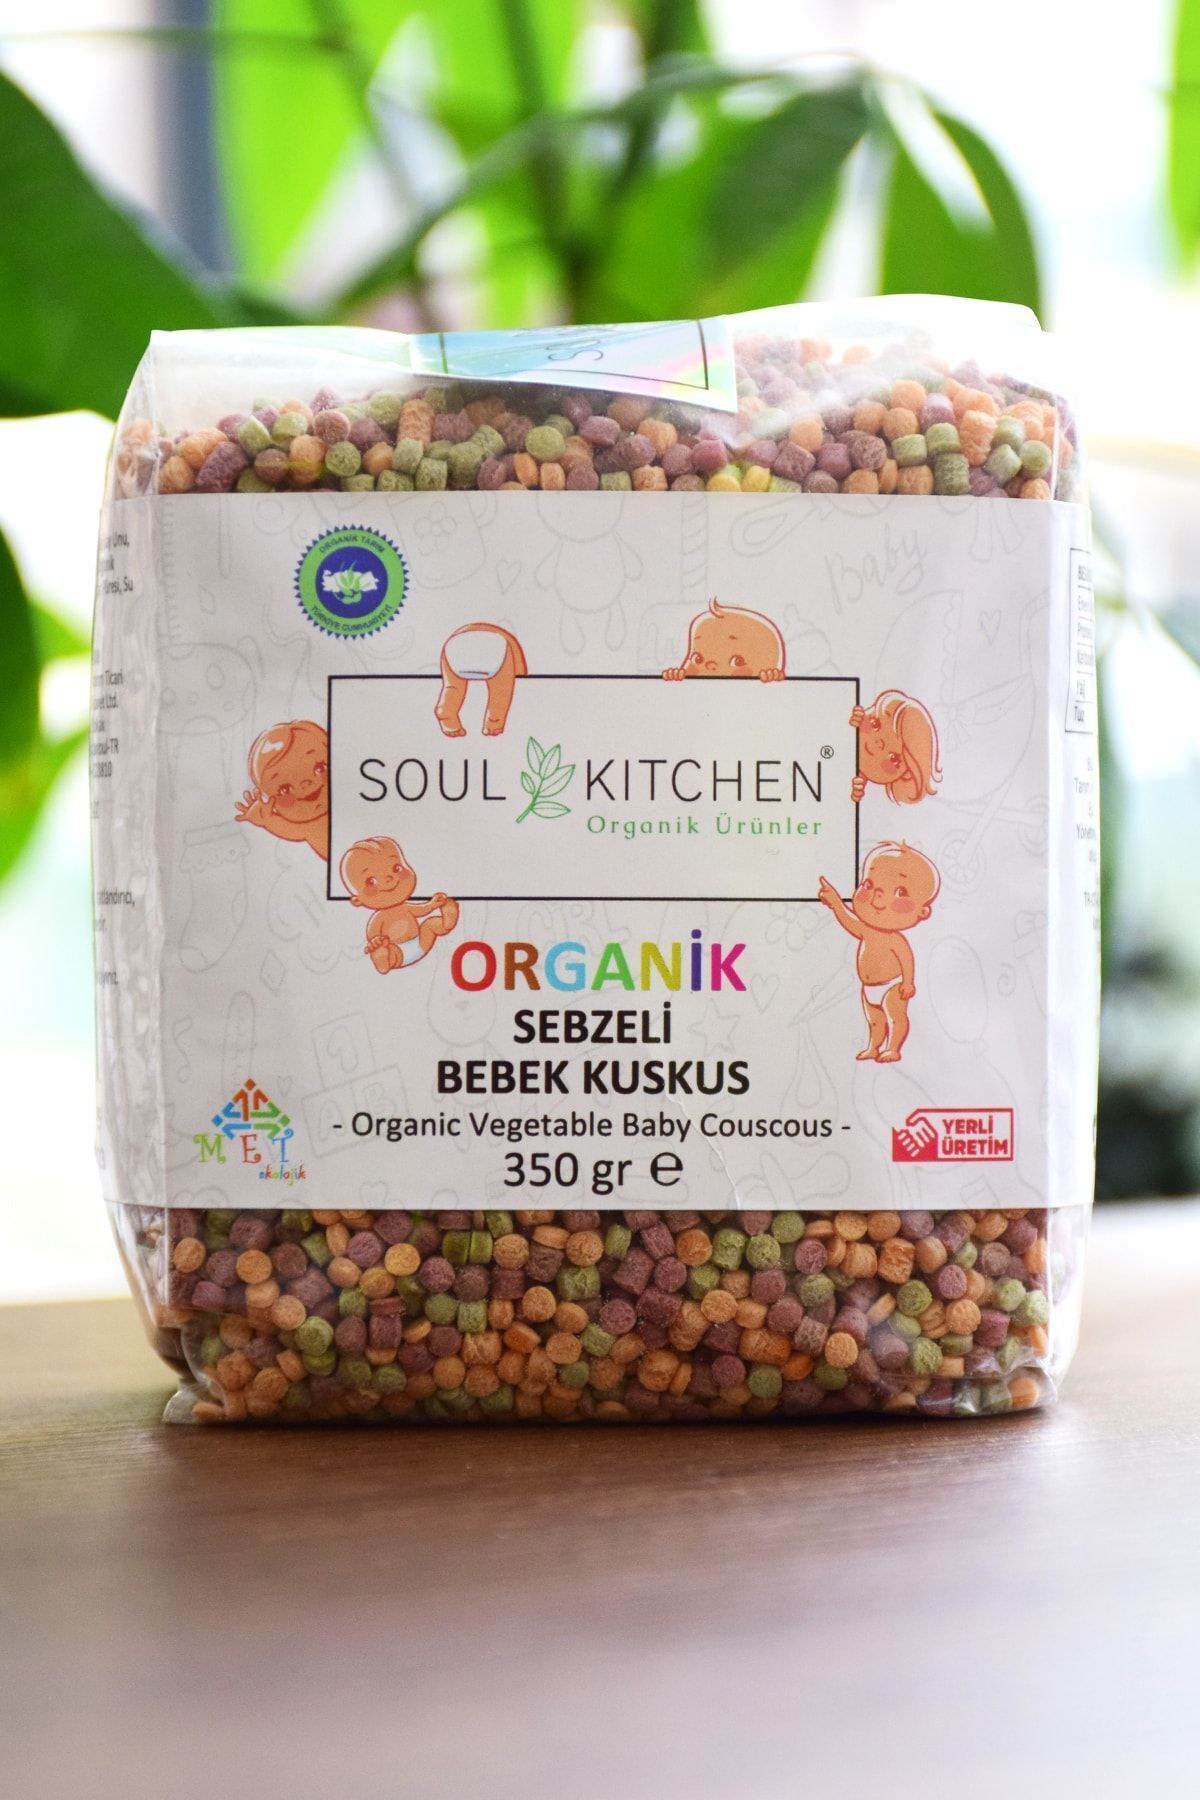 Soul Kitchen Organik Ürünler Organik Sebzeli Bebek Kuskus 350gr - Tuzsuz